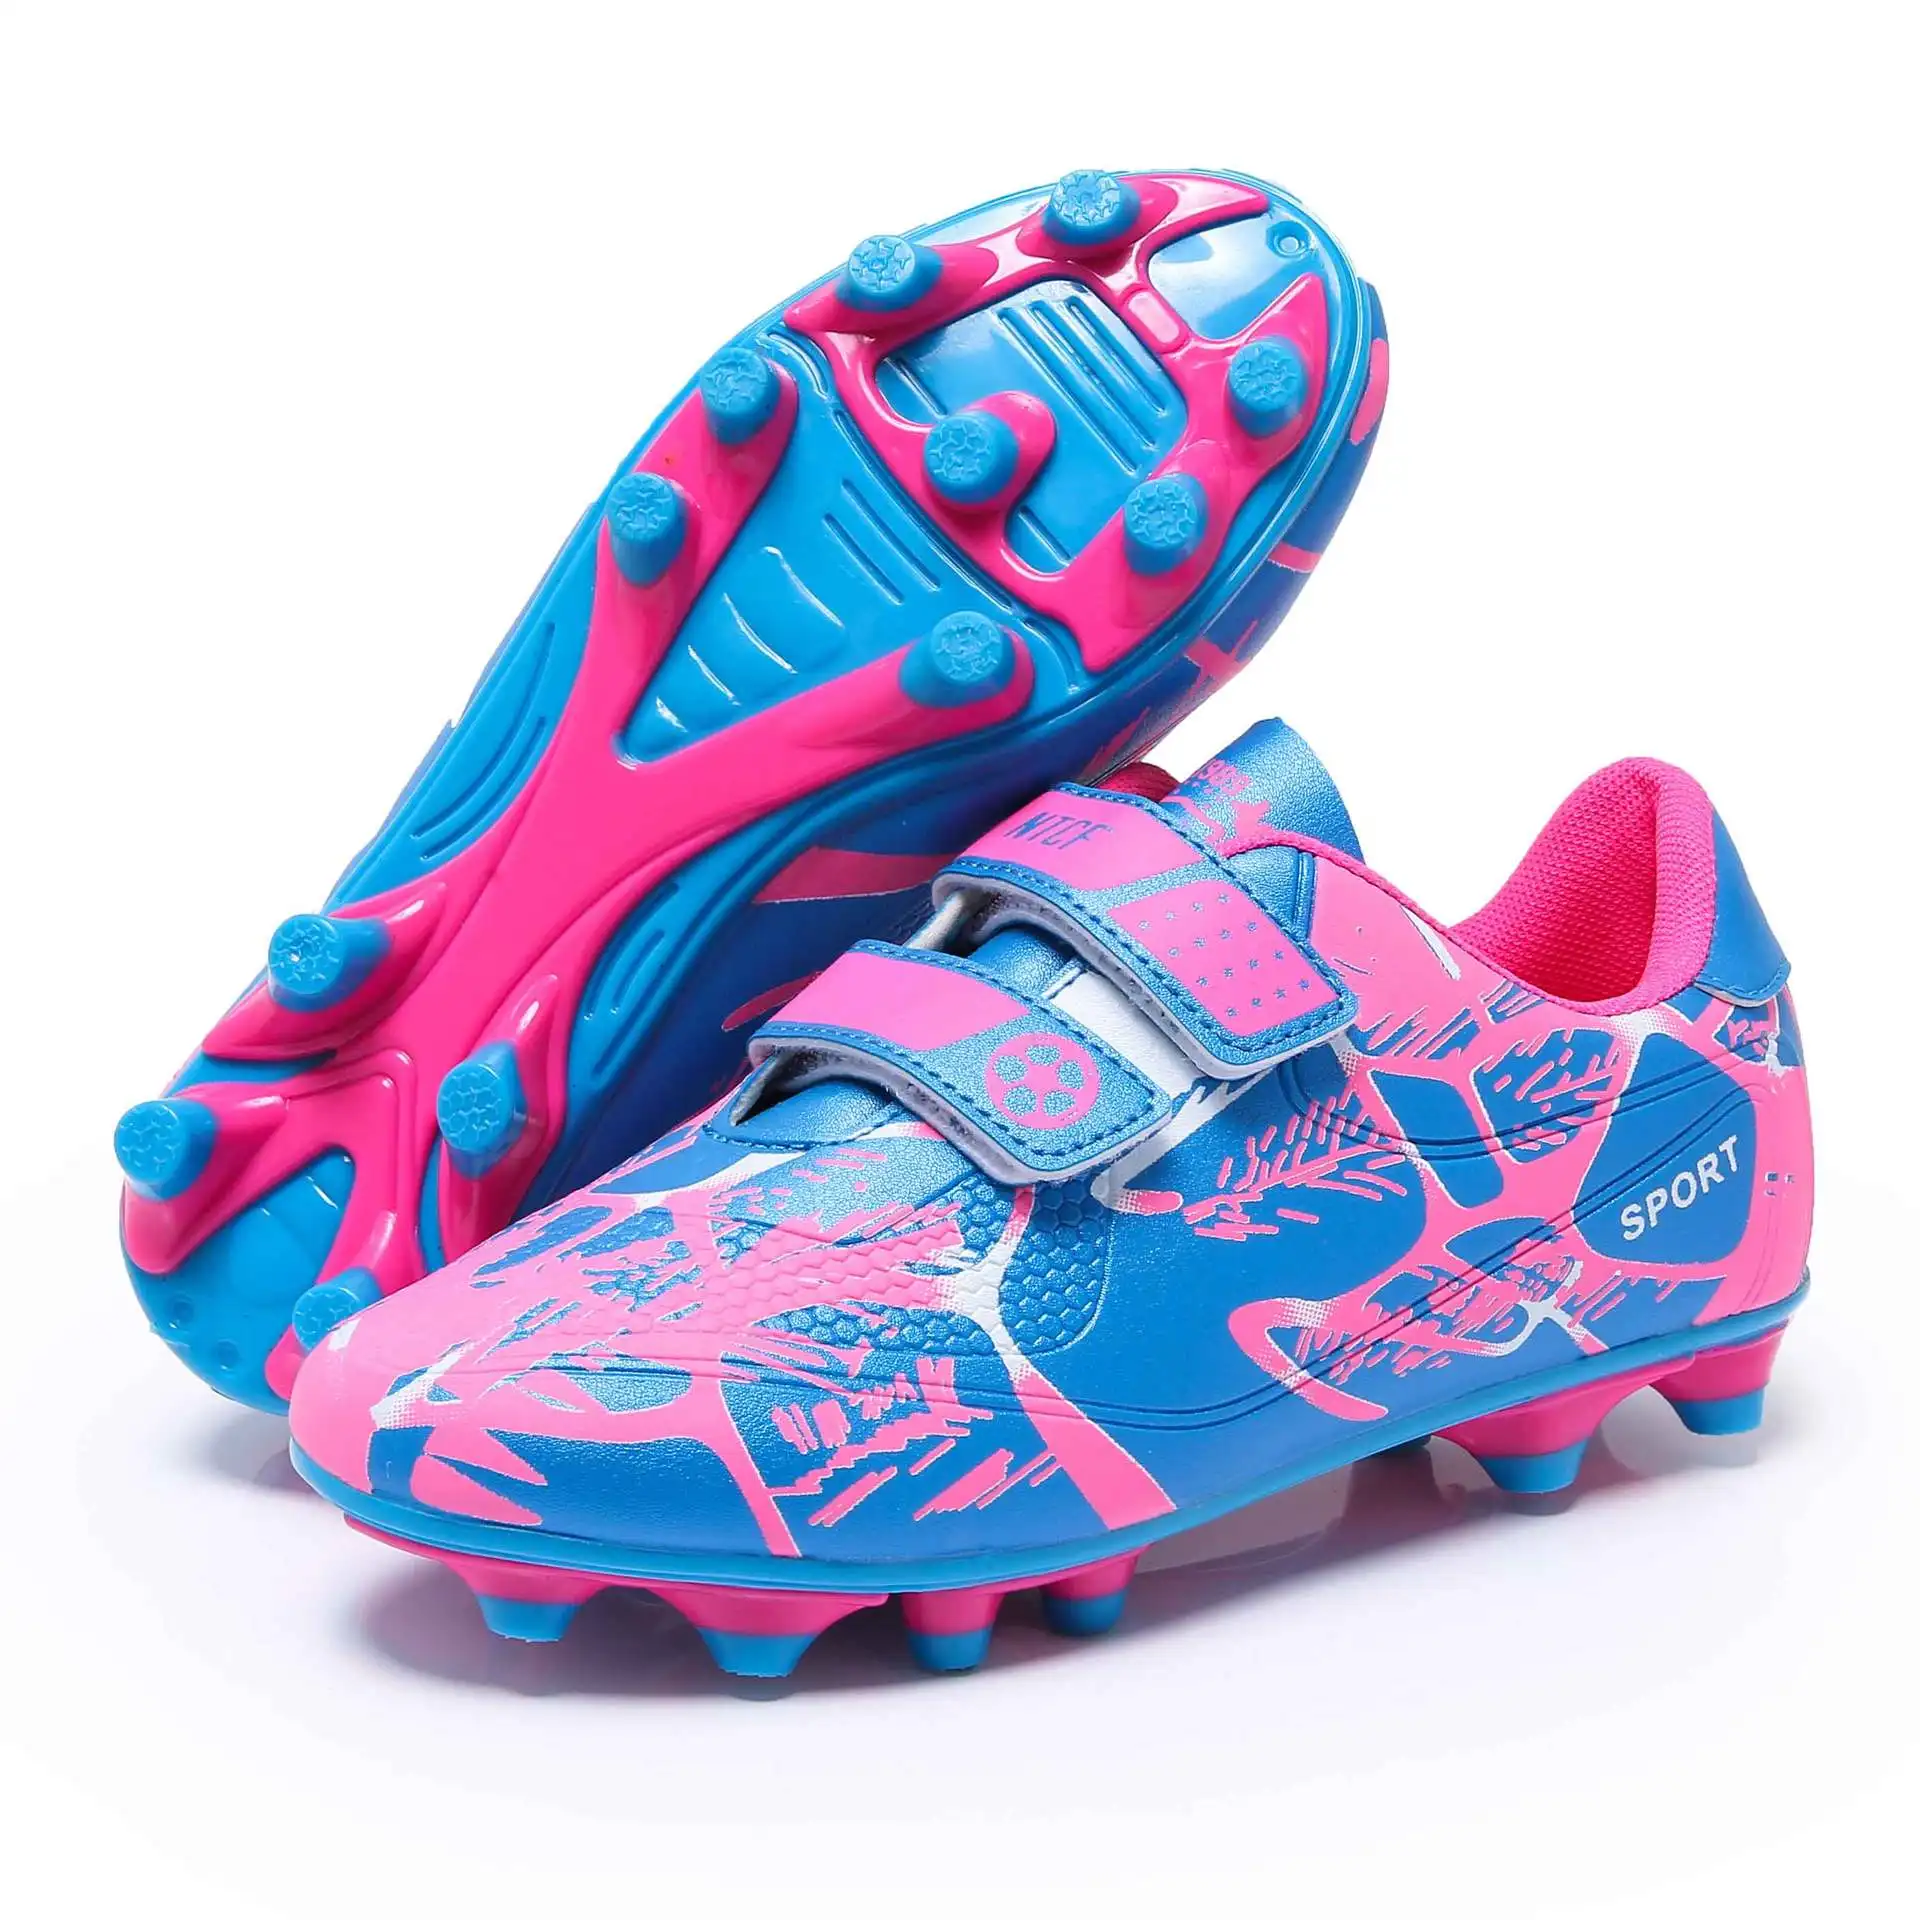 Футбольная обувь с низким верхом, кожаные ногти, длинные ногти, сломанные ногти, плоская подошва, травяная спортивная обувь для детей и подростков - Цвет: long spikes pink